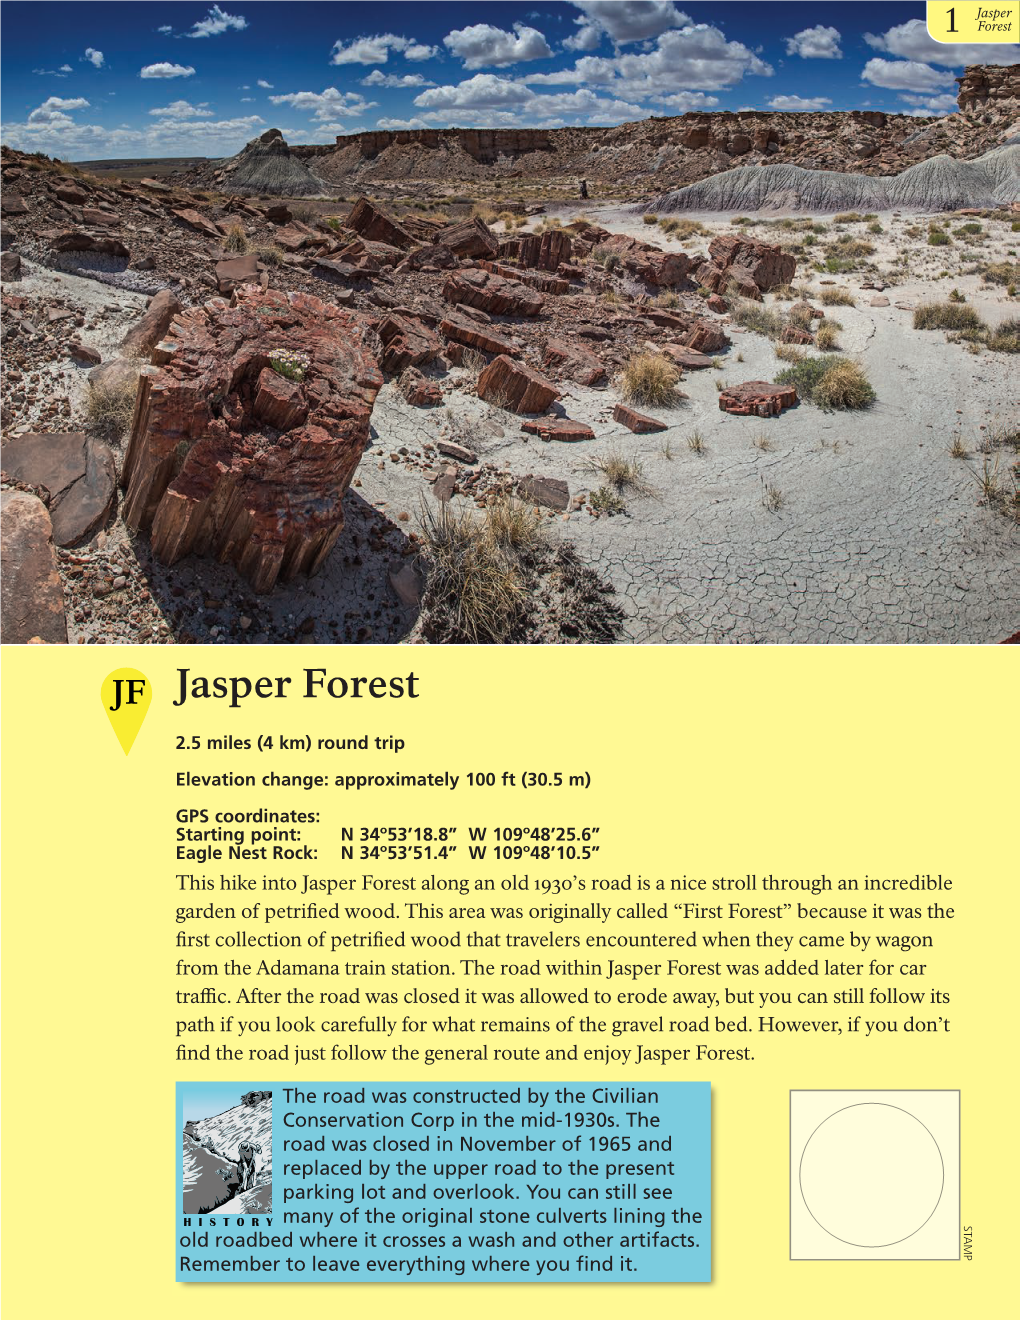 Jasper Forest